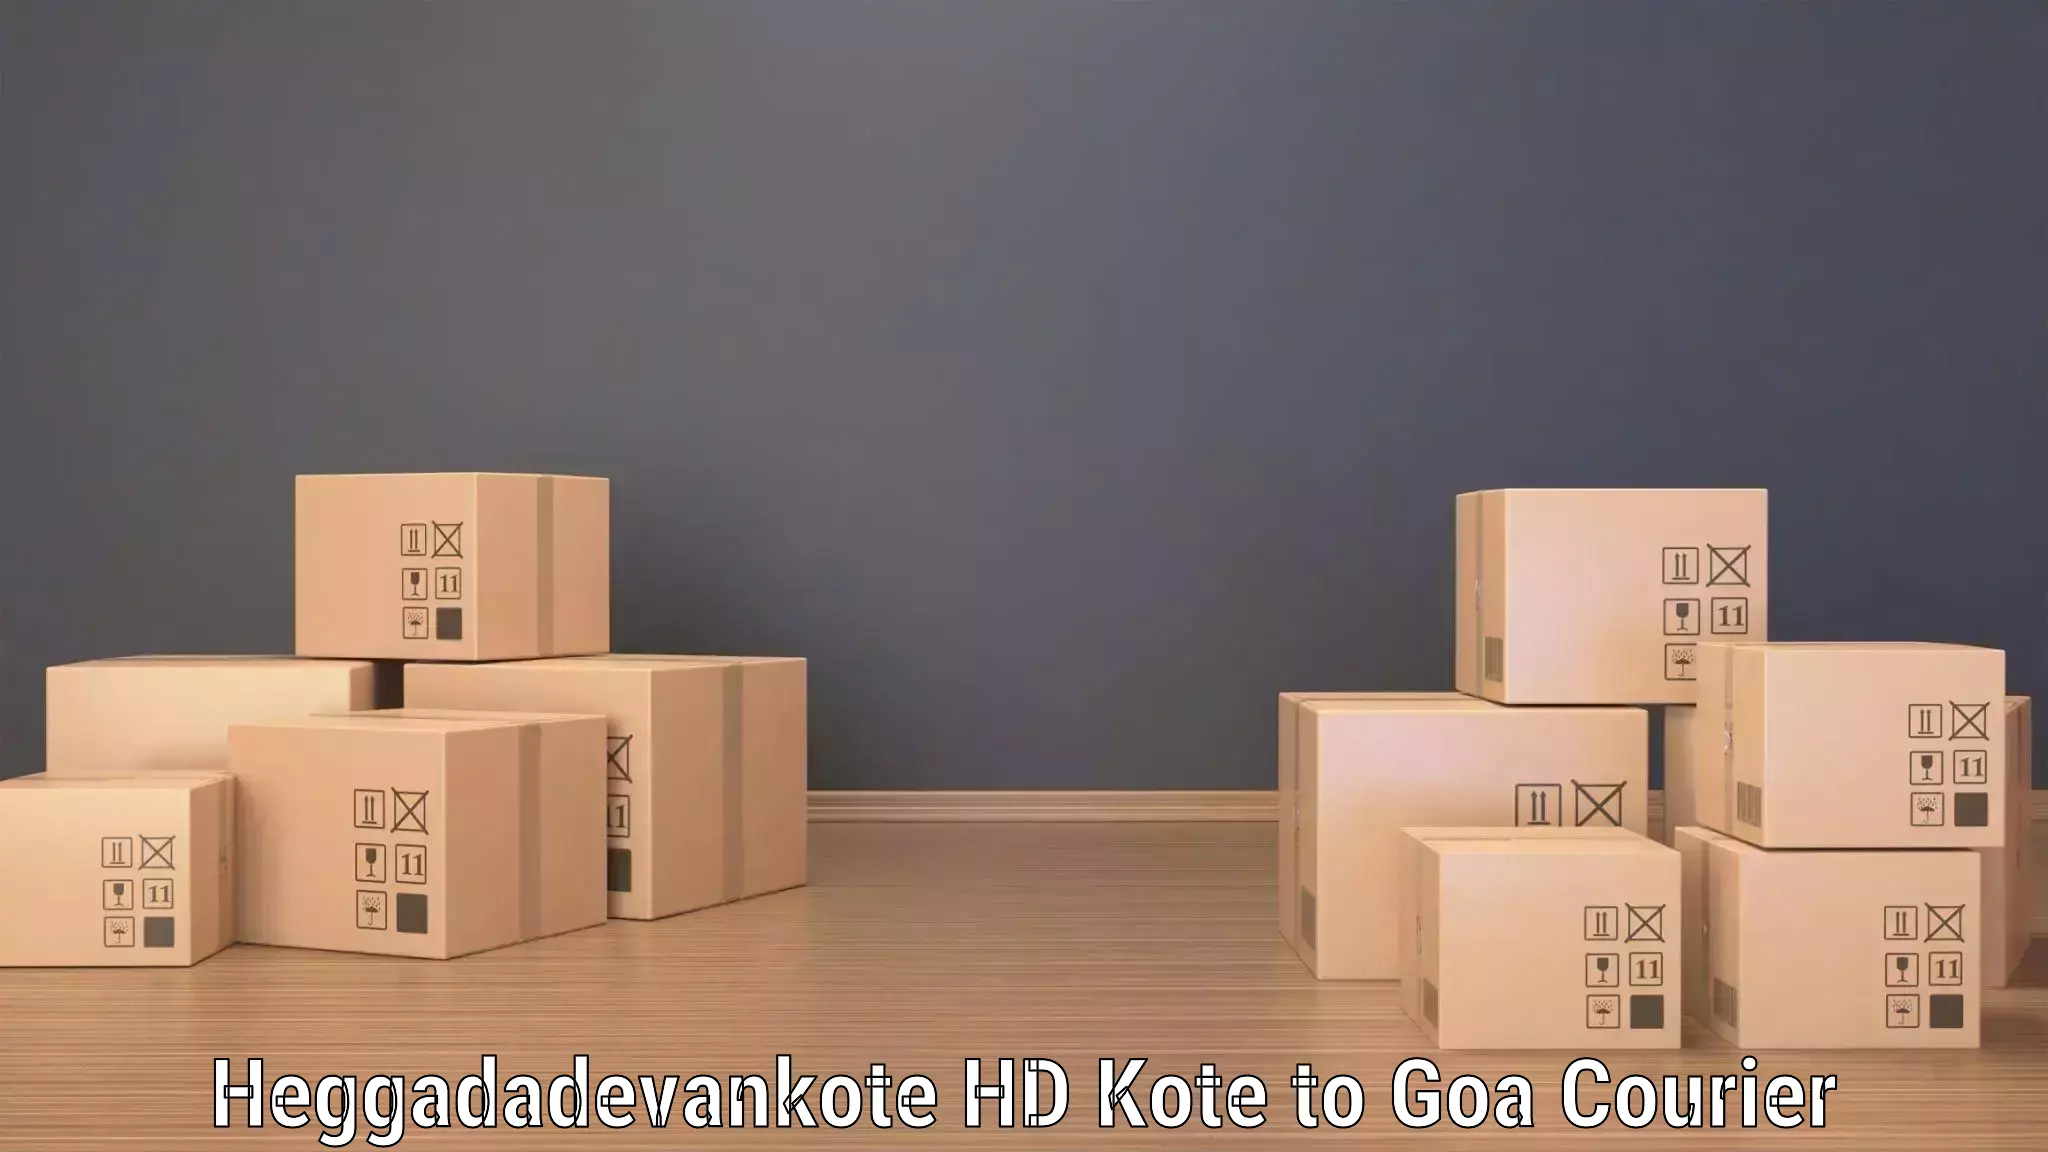 Smart courier technologies Heggadadevankote HD Kote to South Goa